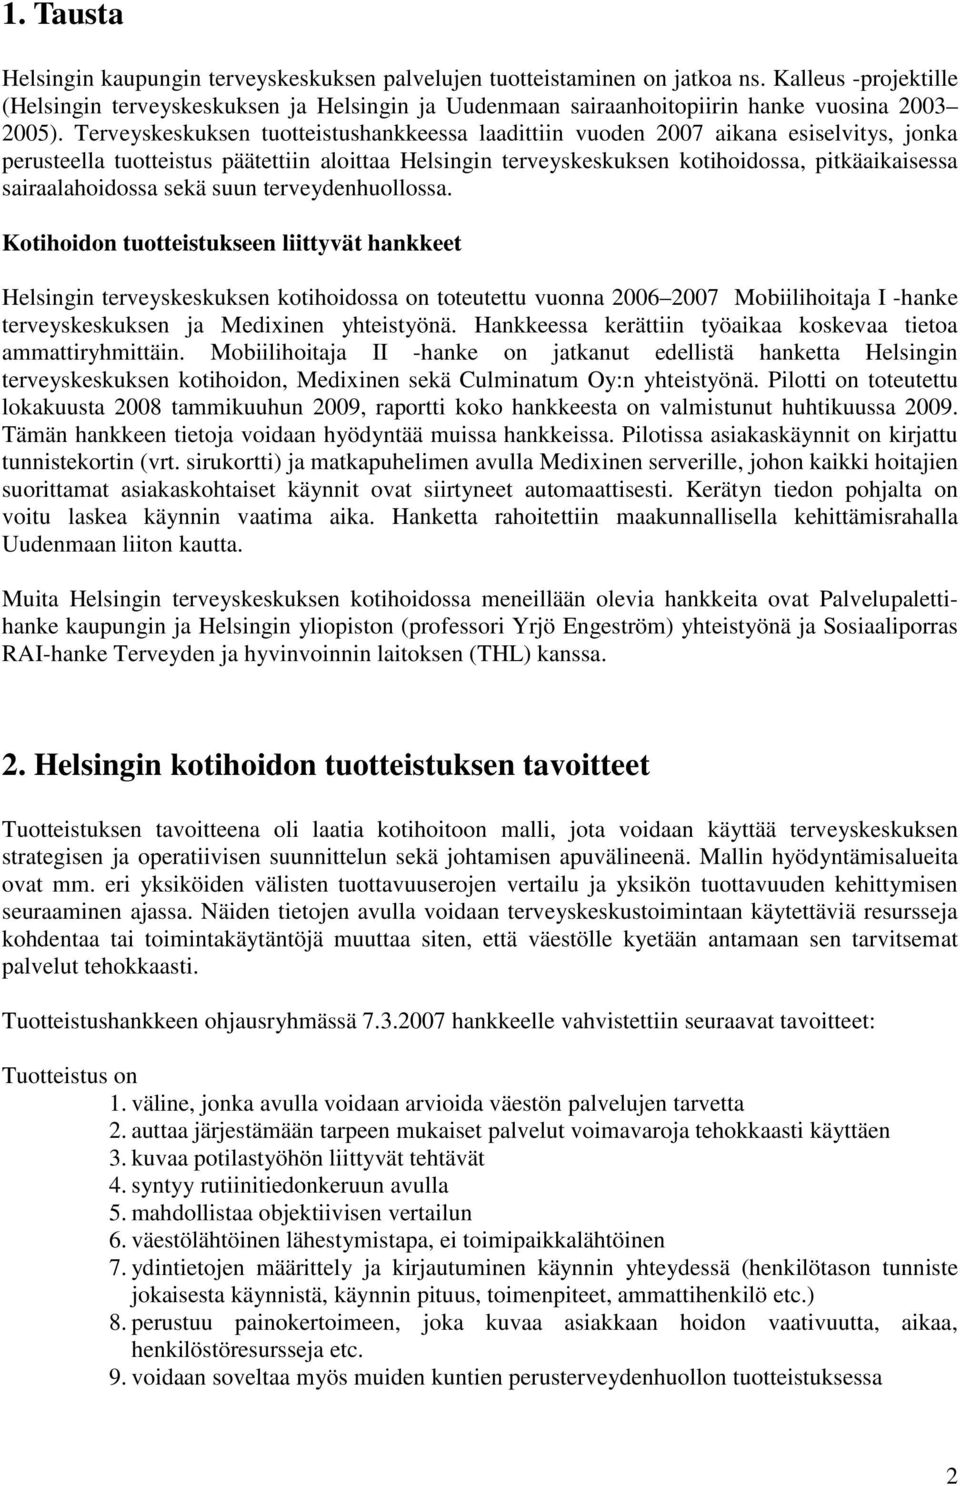 Terveyskeskuksen tuotteistushankkeessa laadittiin vuoden 2007 aikana esiselvitys, jonka perusteella tuotteistus päätettiin aloittaa Helsingin terveyskeskuksen kotihoidossa, pitkäaikaisessa